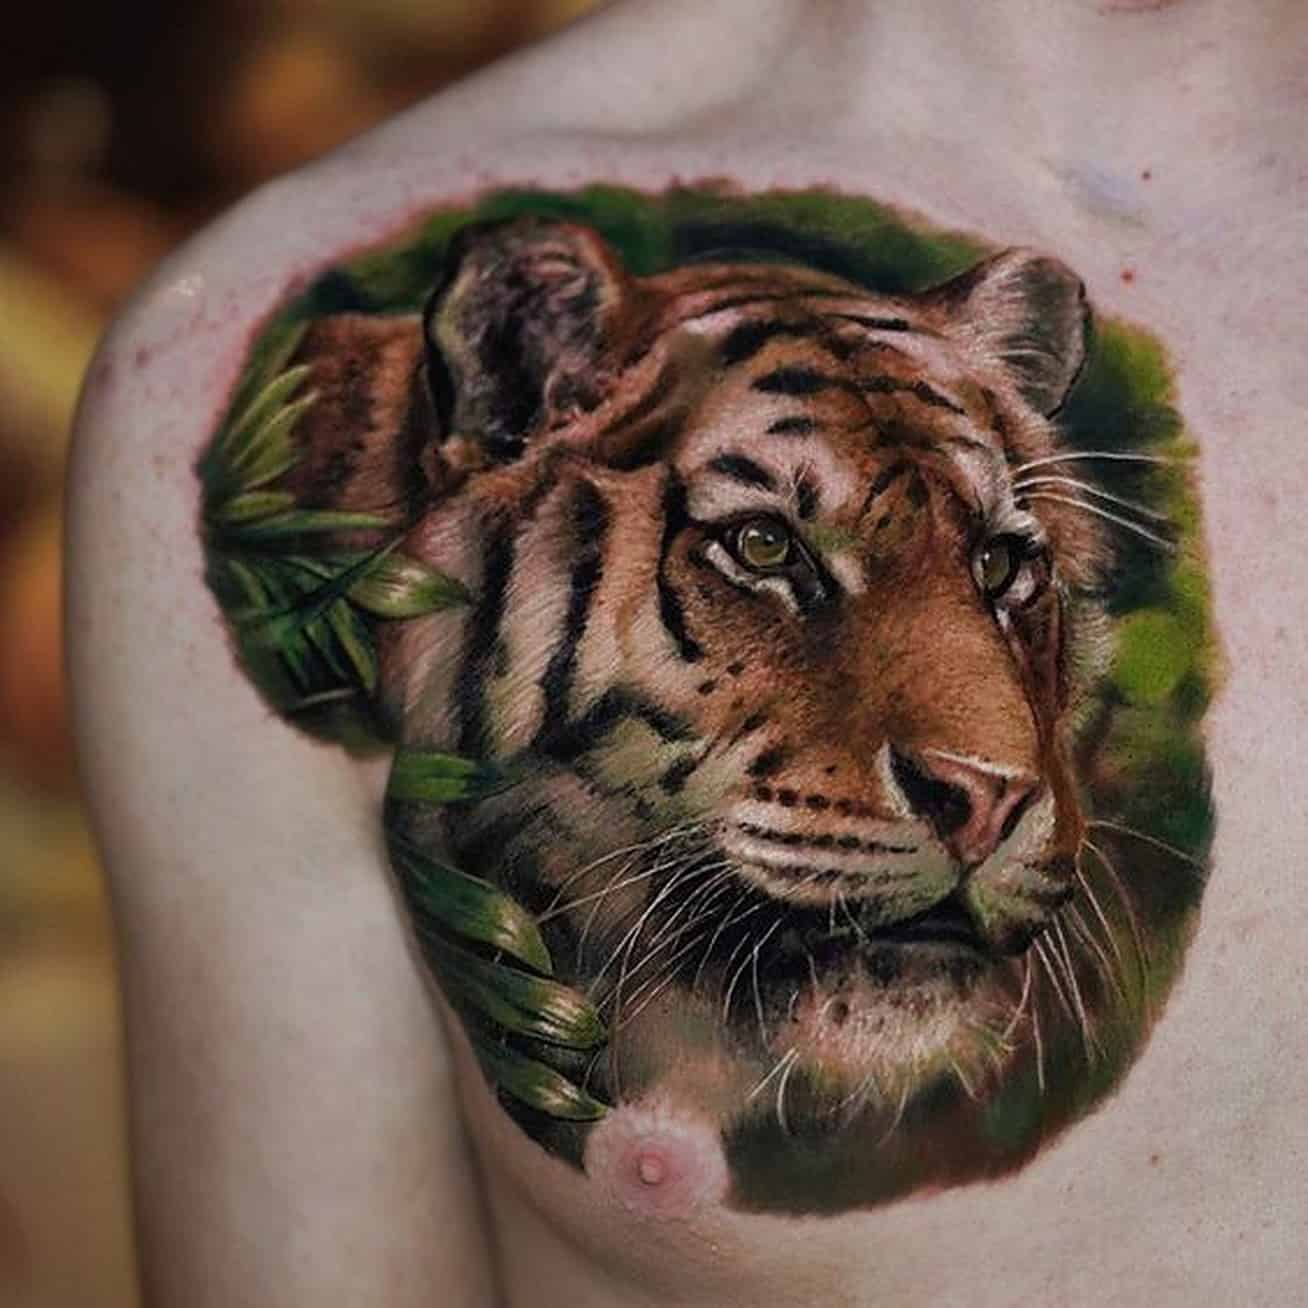 Tiger fighting a snake tattoo idea | TattoosAI